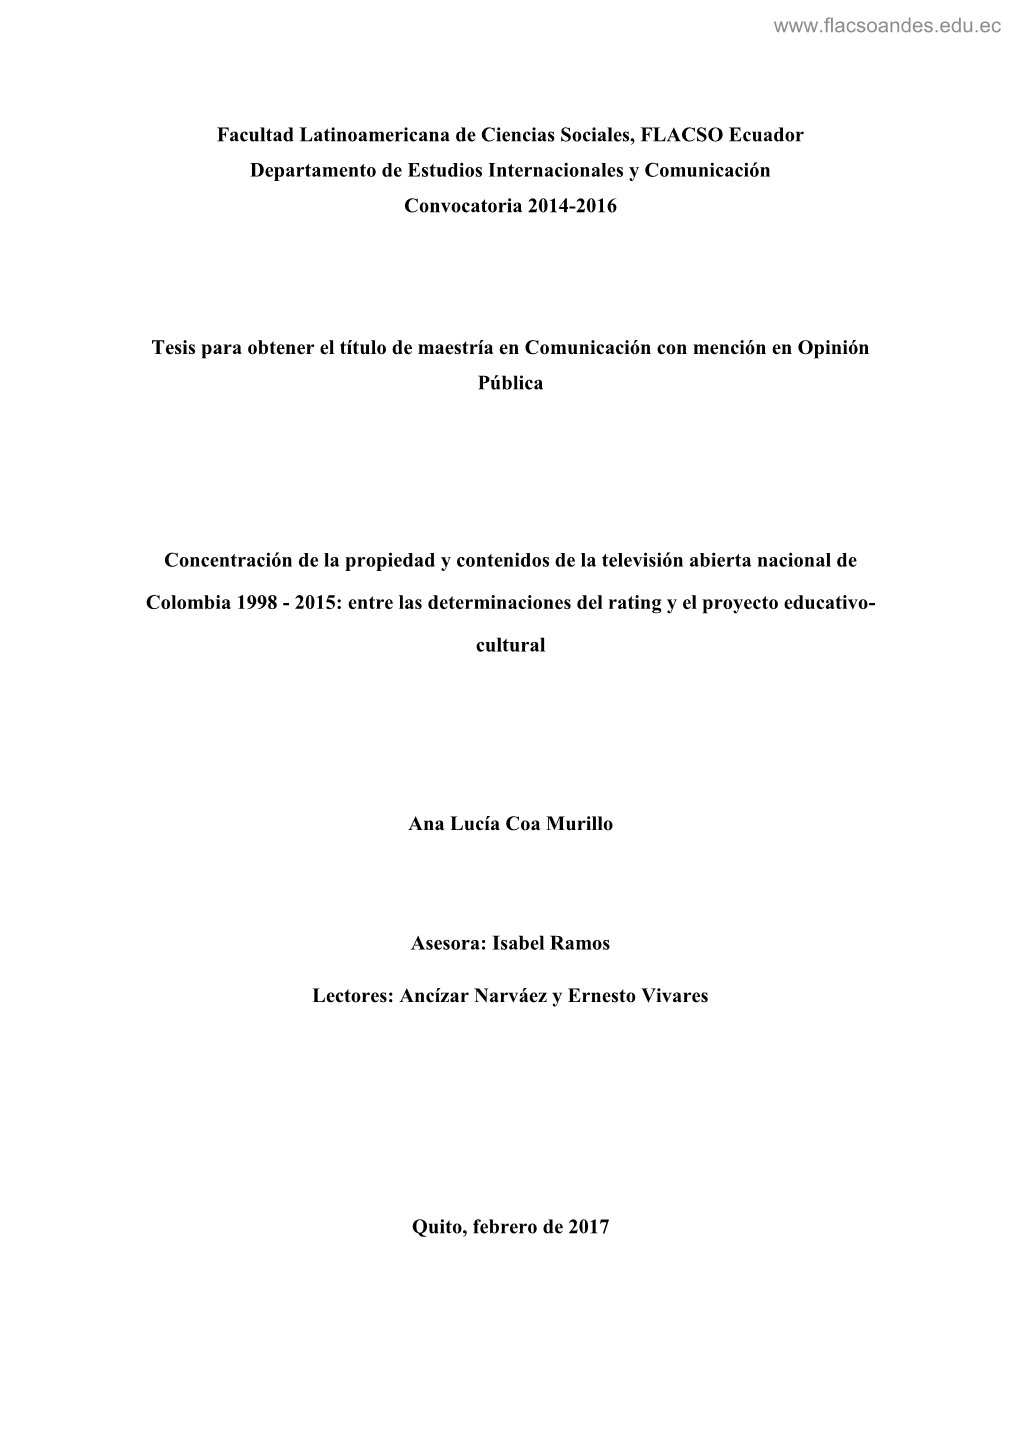 Facultad Latinoamericana De Ciencias Sociales, FLACSO Ecuador Departamento De Estudios Internacionales Y Comunicación Convocatoria 2014-2016